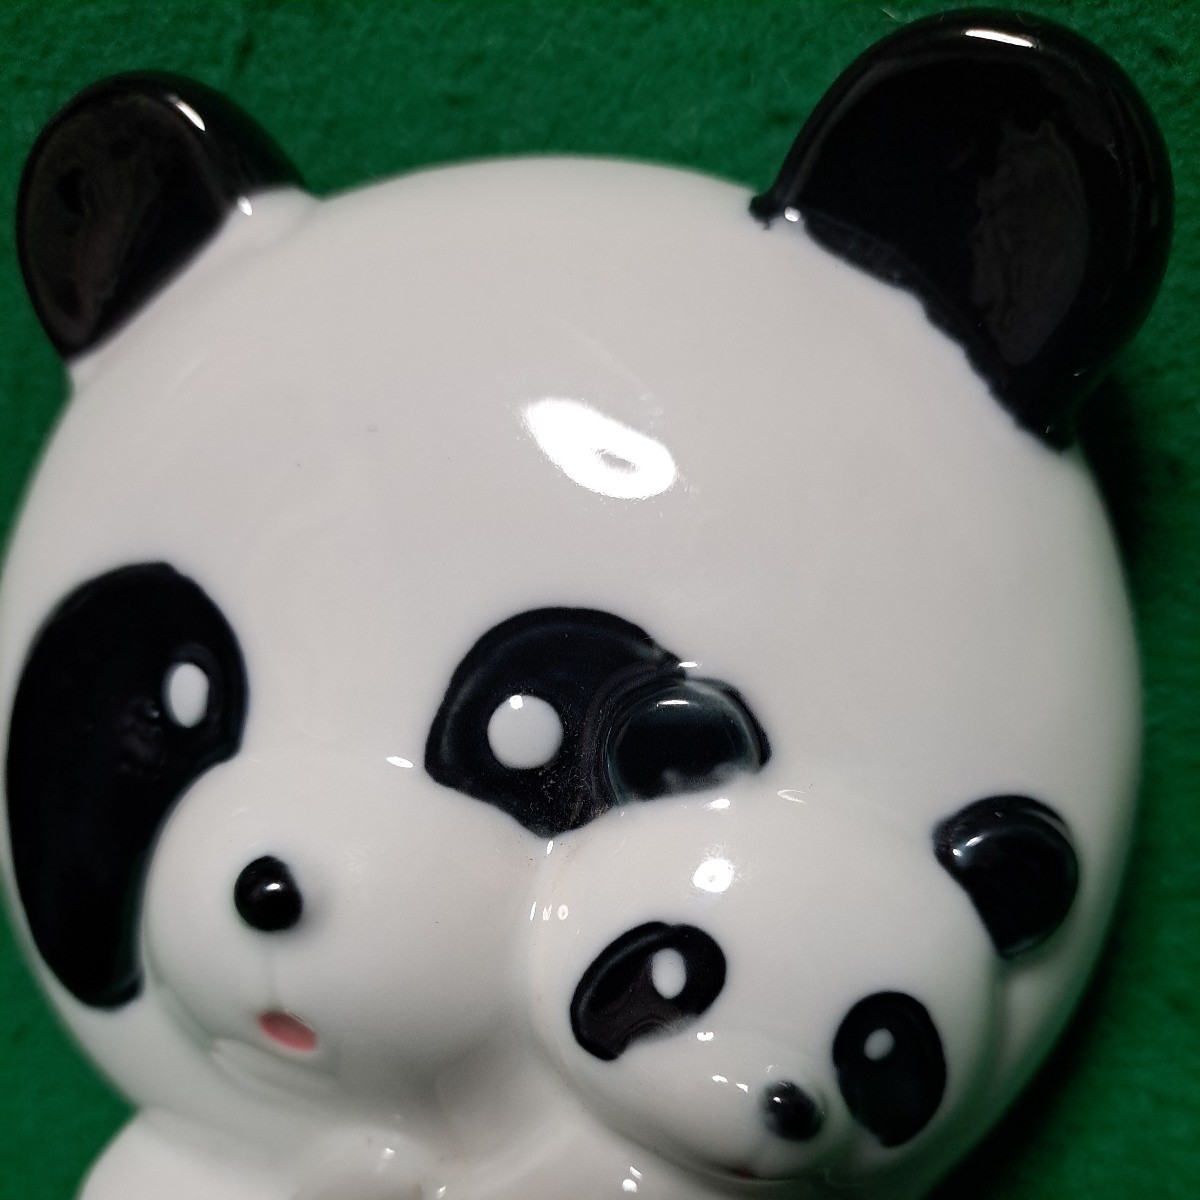  редкость прекрасный товар родители . Panda полотенце вешалка керамика производства стоимость доставки 510 иен 